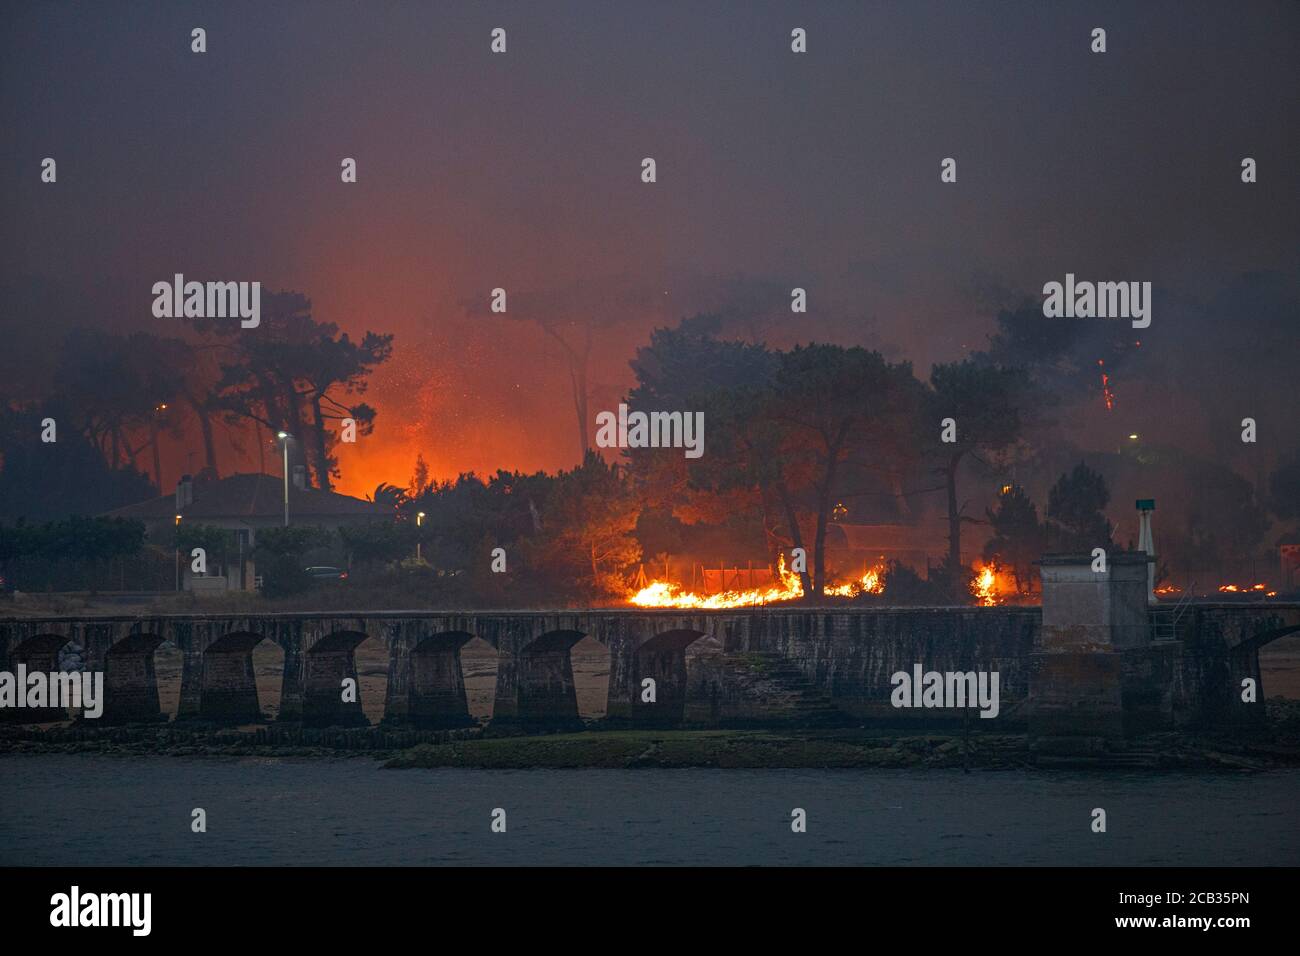 Chiberta arson bosque el 2020 de julio de 30. El incendio devastó 165 hectáreas de bosque y quemó 11 casas en el corazón de Anglet. Fuego salvaje. Blaze. Foto de stock